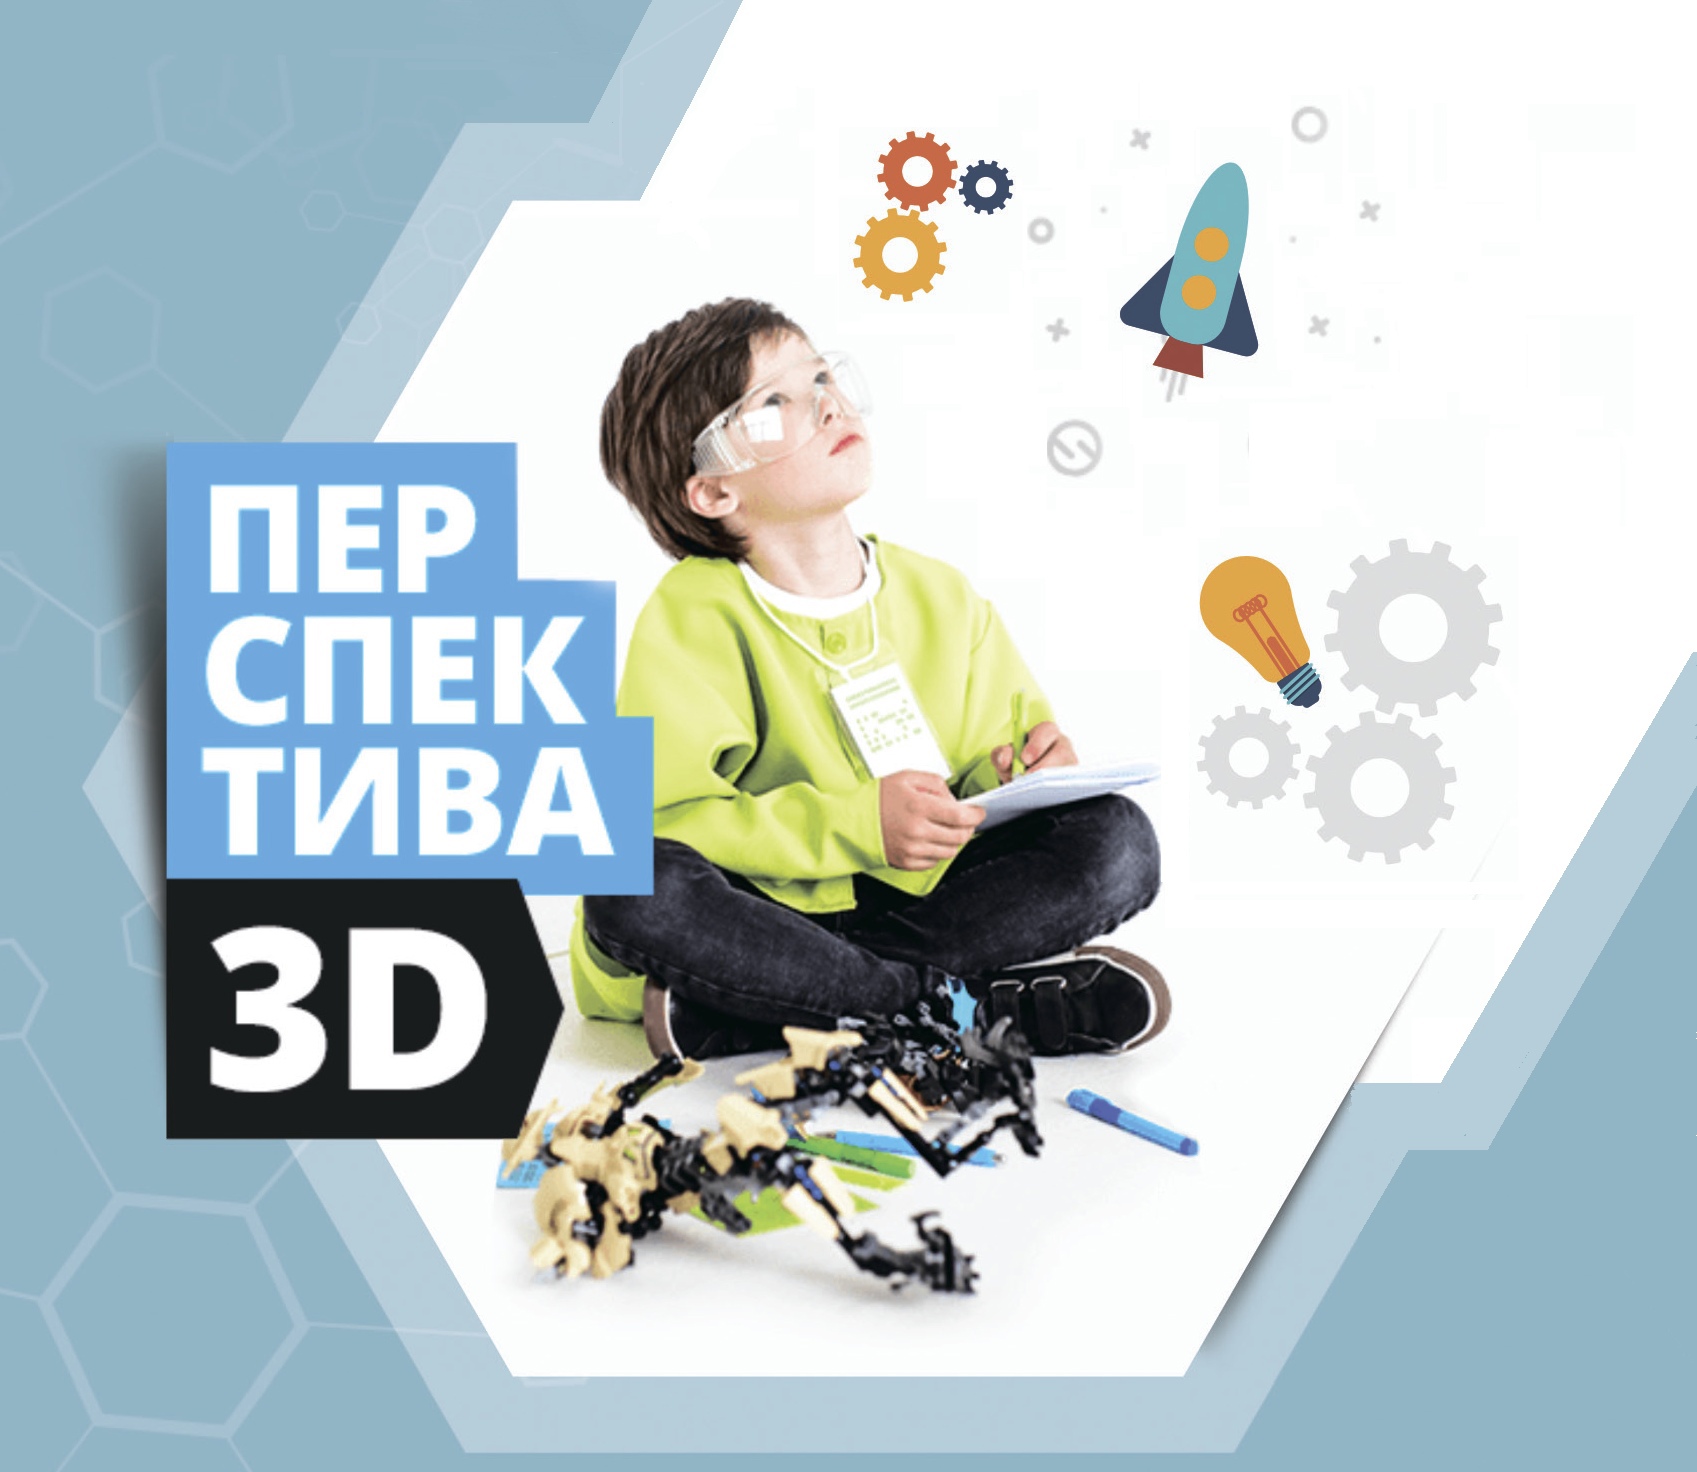 Всероссийский конкурс 3D-моделирования и 3D-печати «Перспектива 3D».